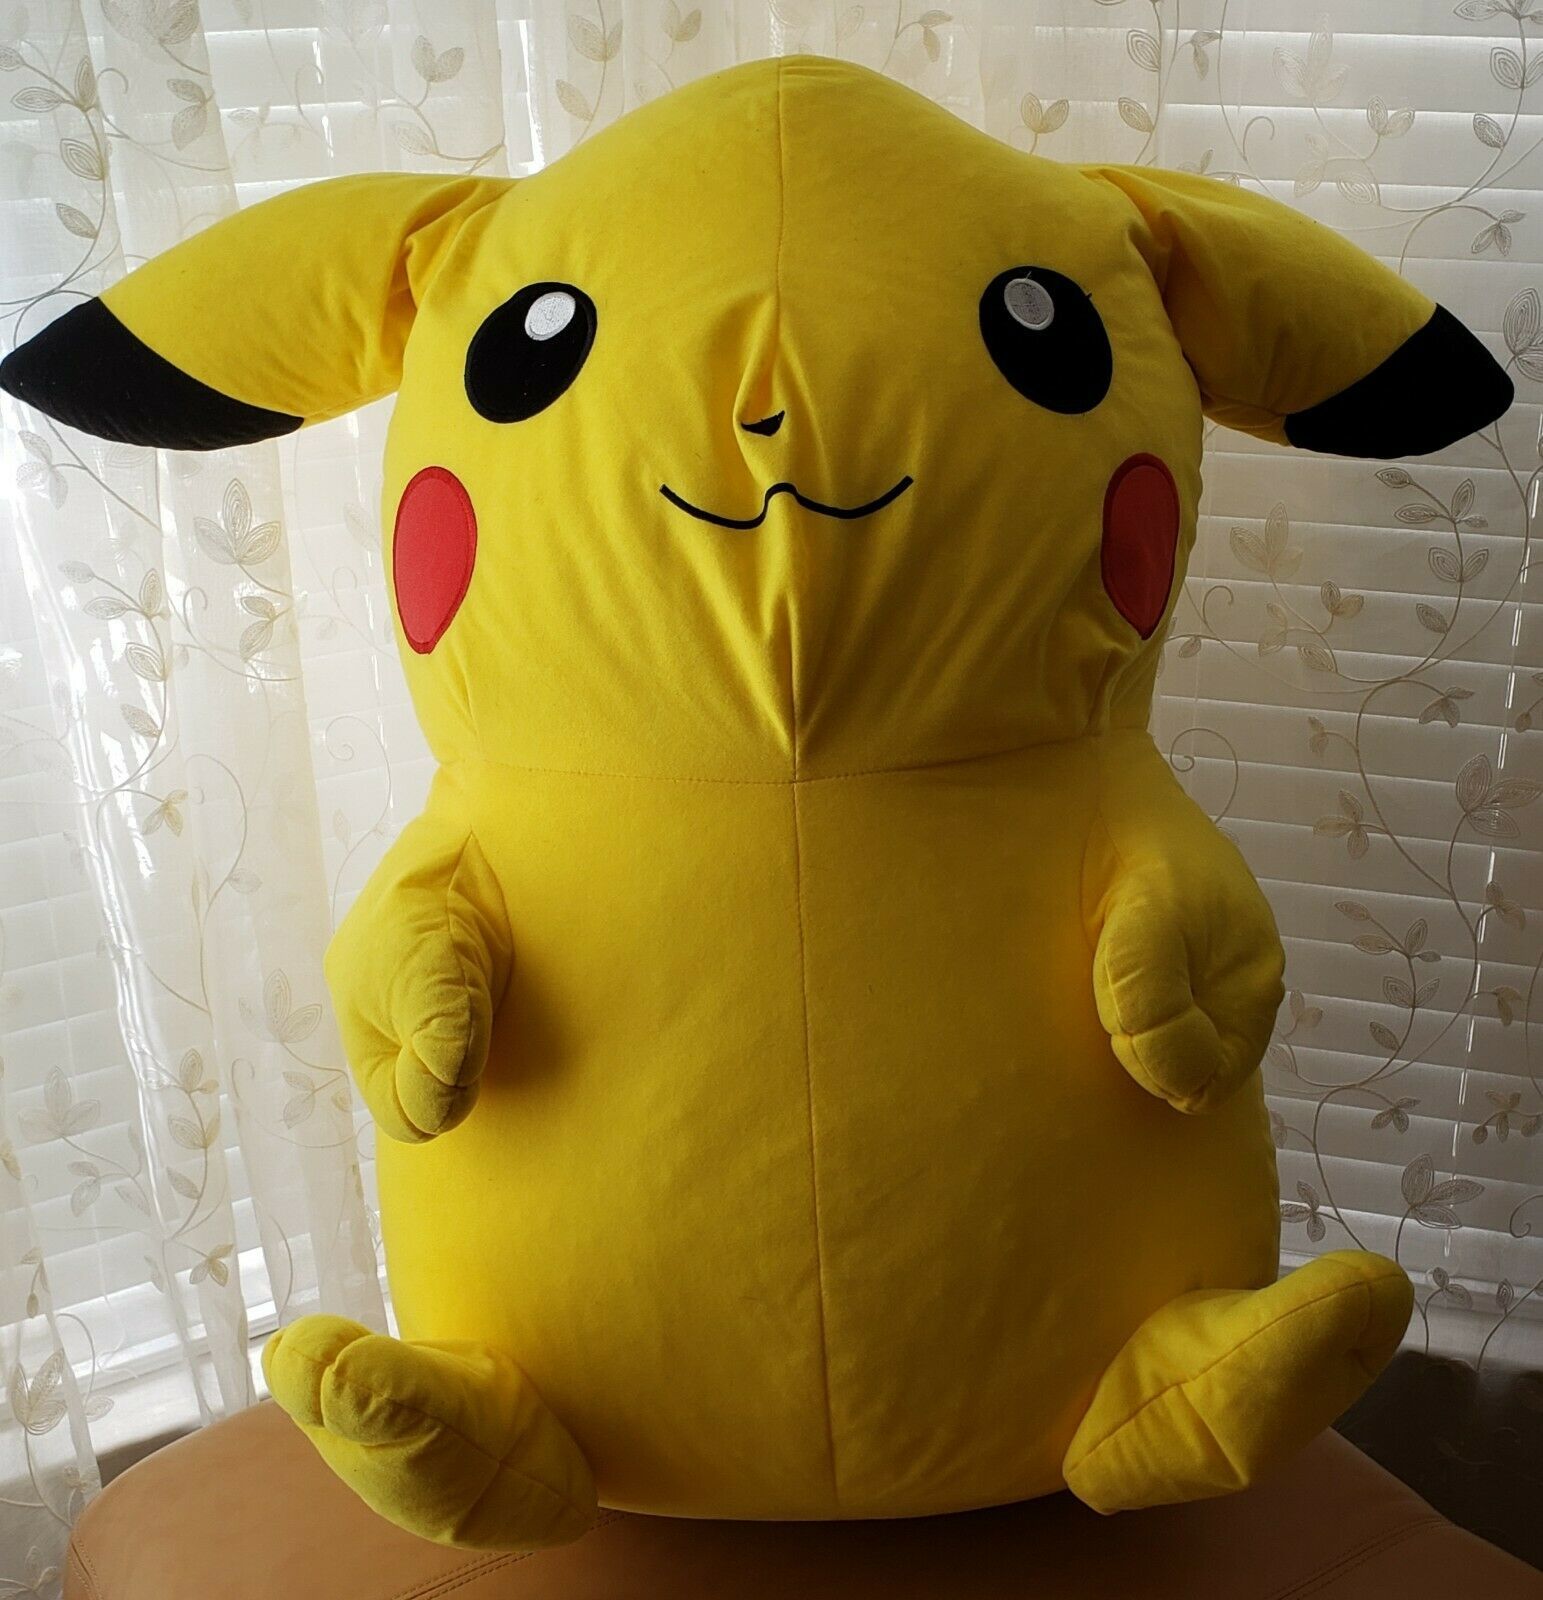 life size pikachu stuffed animal